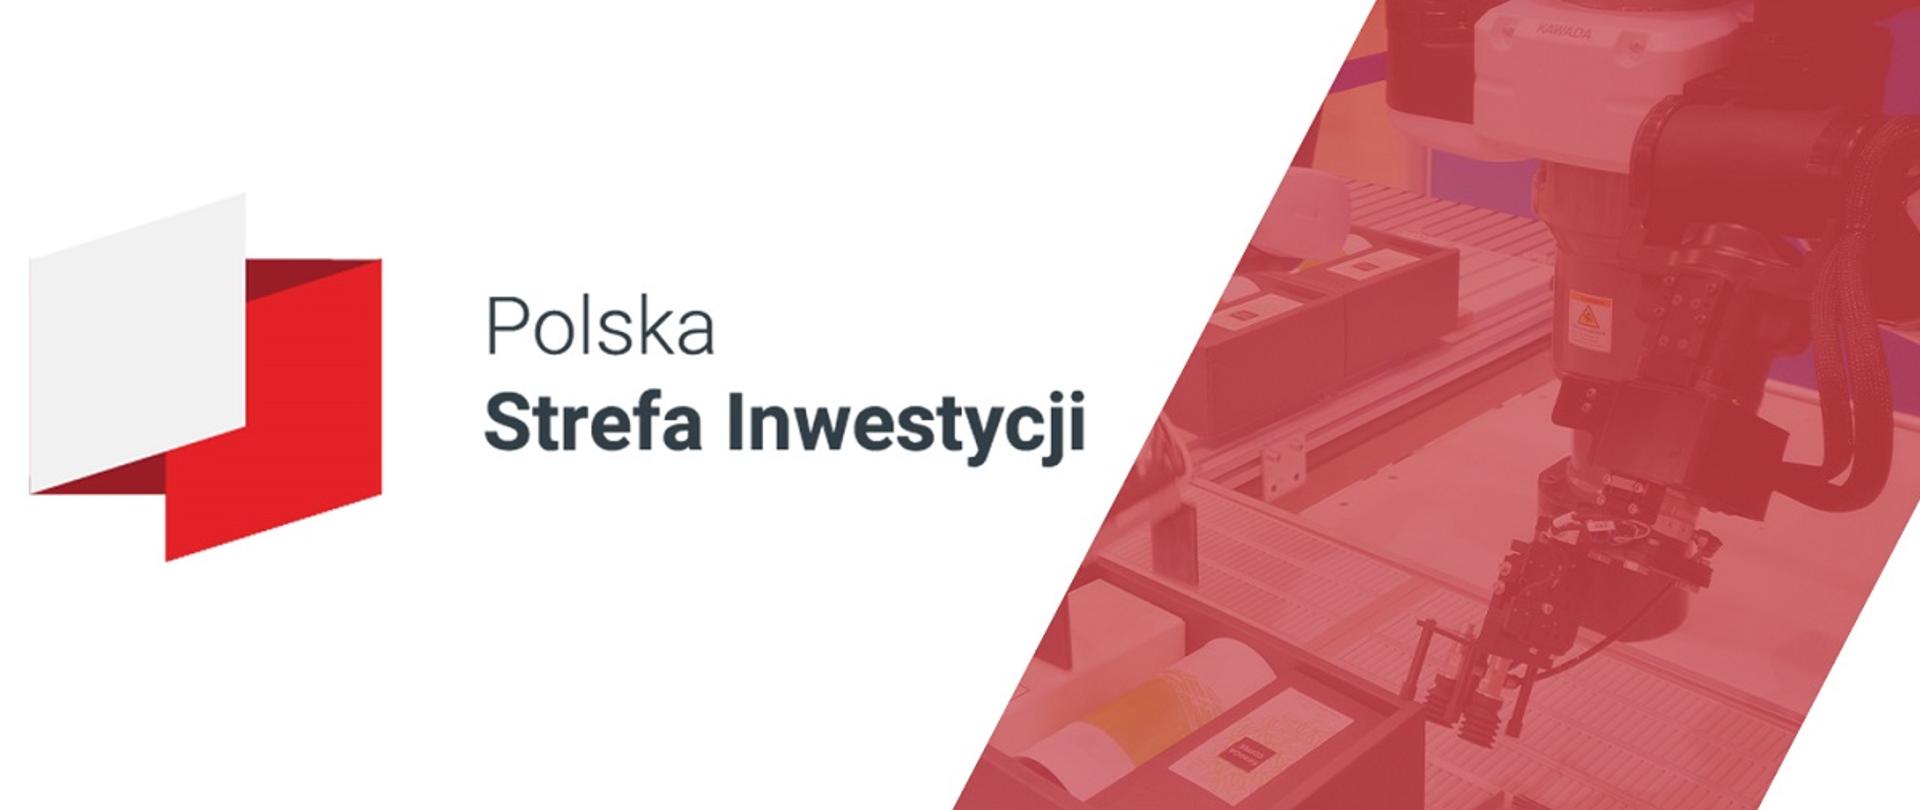 Polska Strefa Inwestycji - po prawej stronie grafiki zdjęcie przedstawiające maszynę